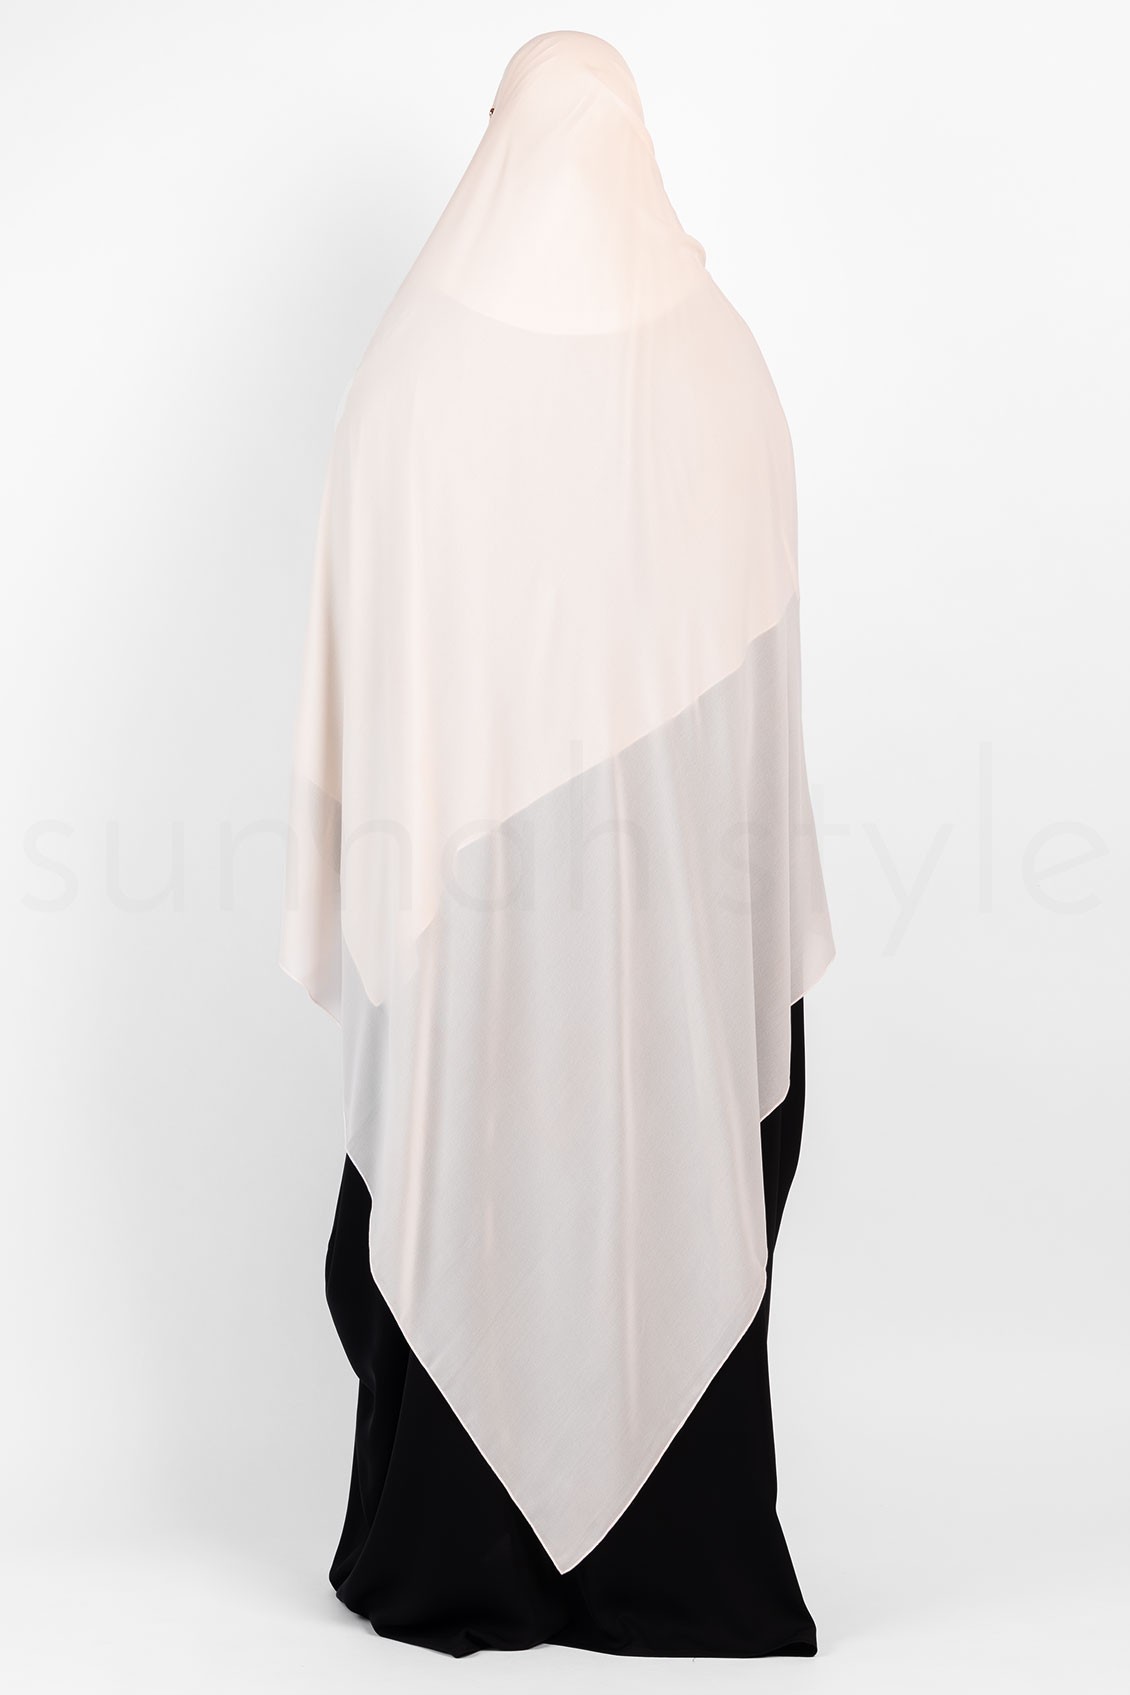 Sunnah Style Essentials Shayla - XL Creamy Peach